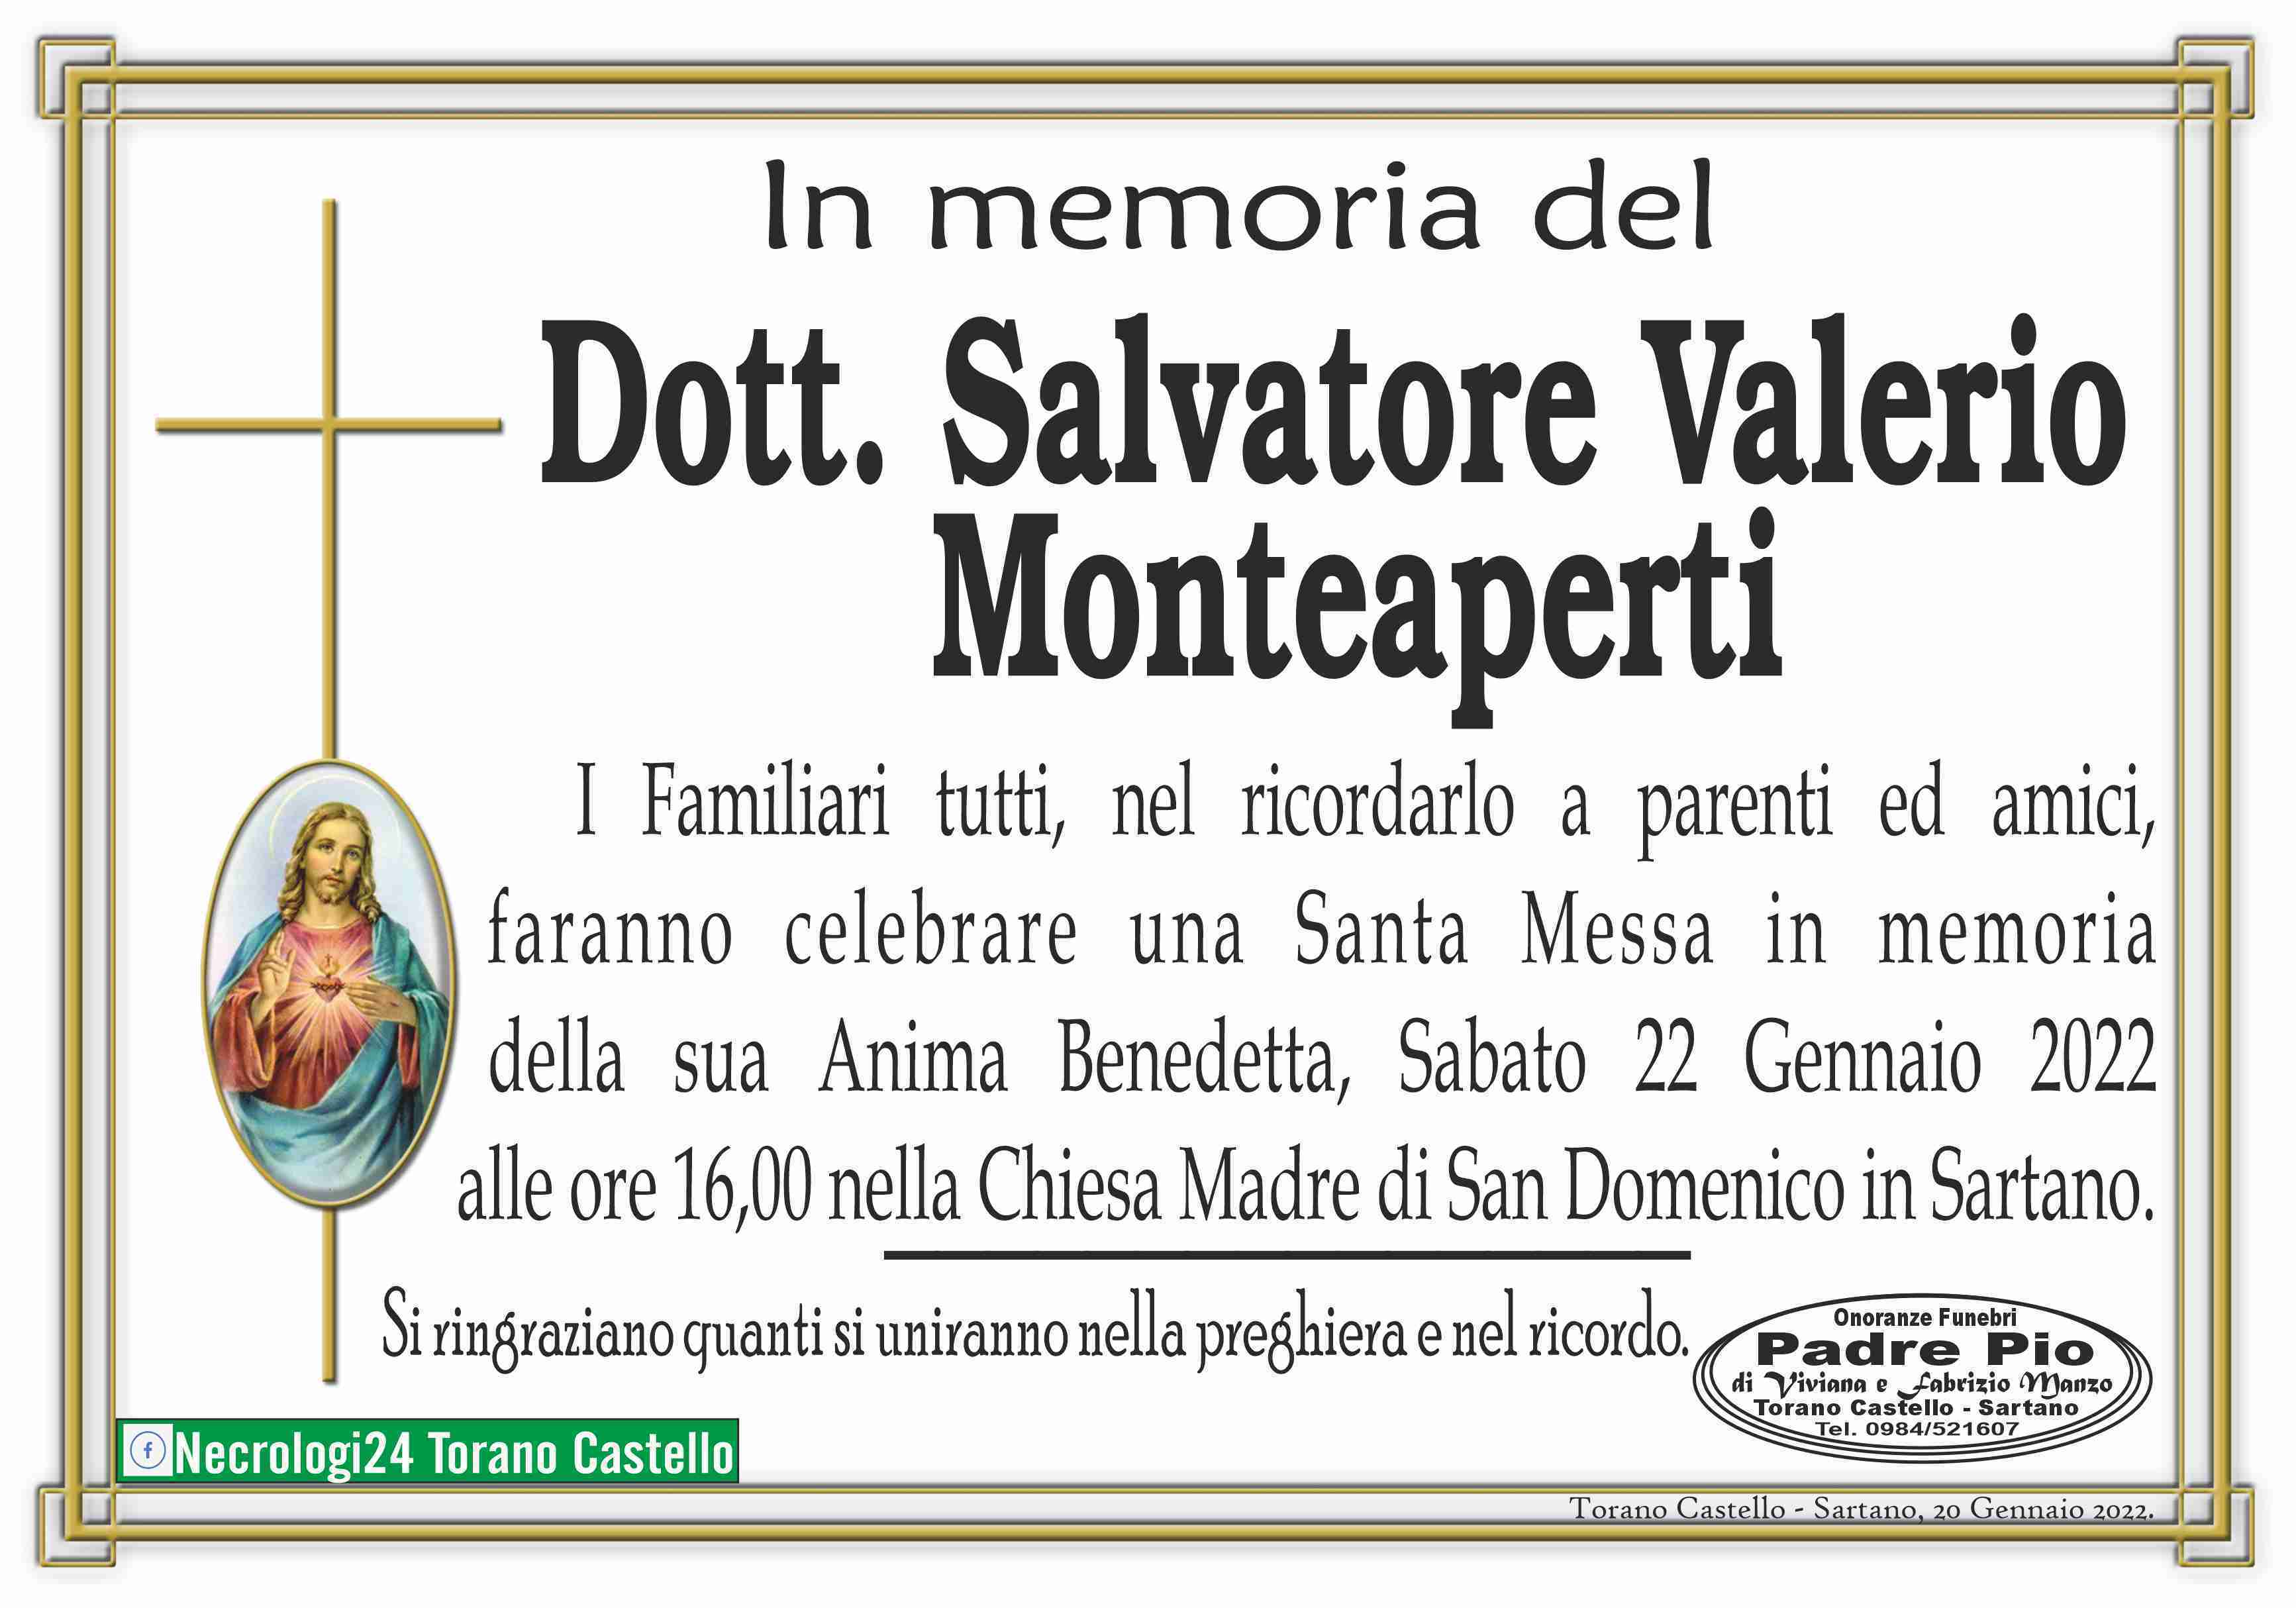 Salvatore Valerio Monteaperti